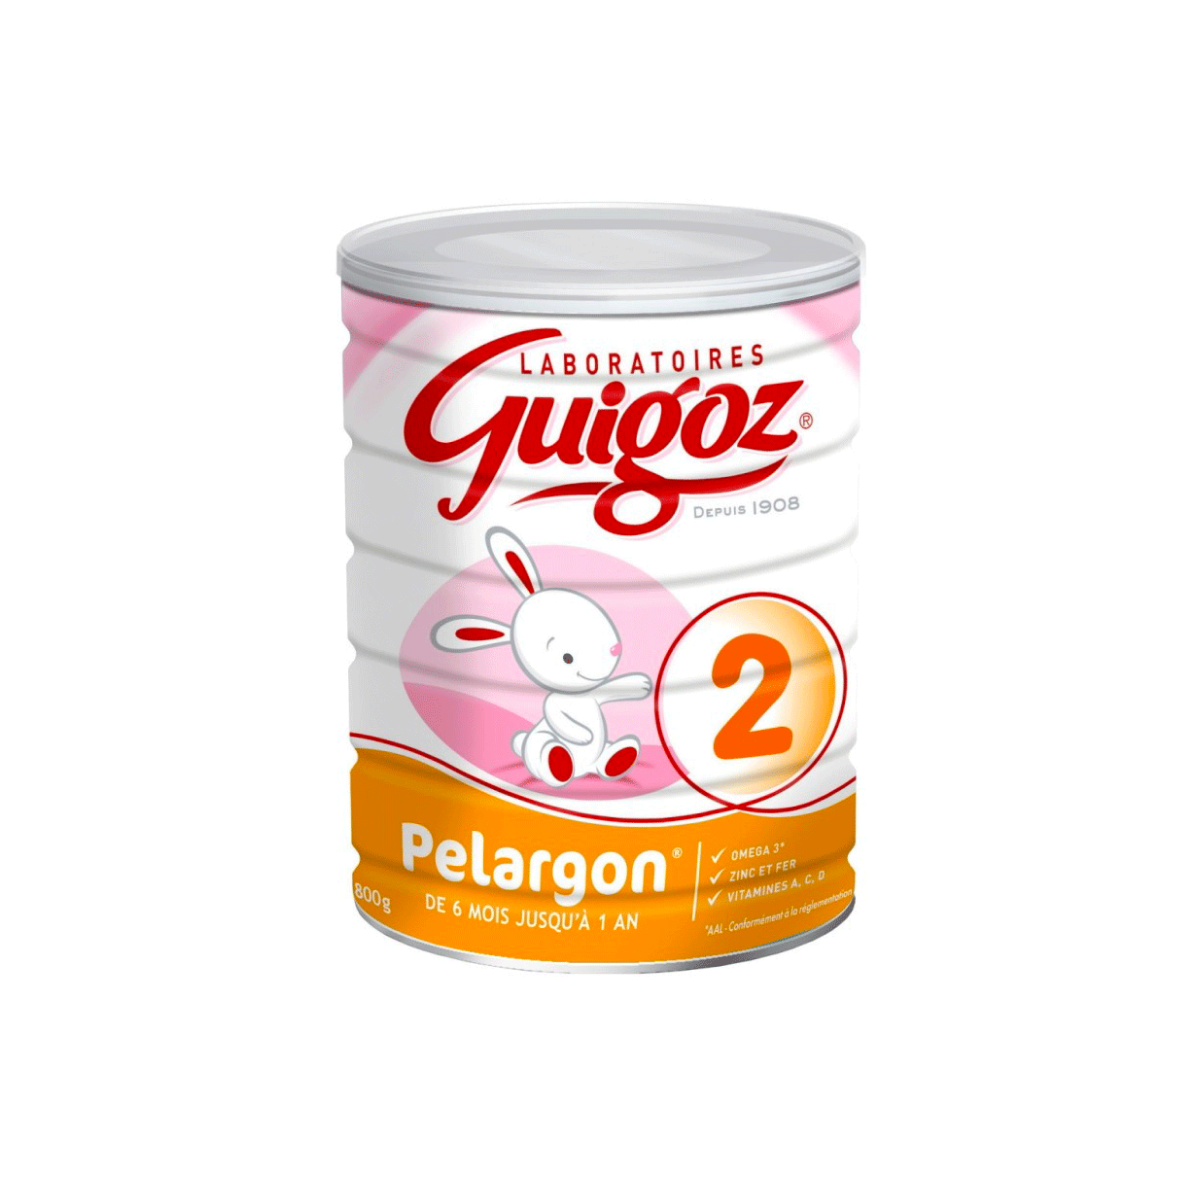 Guigoz 3 Croissance Bio Poudre 800g